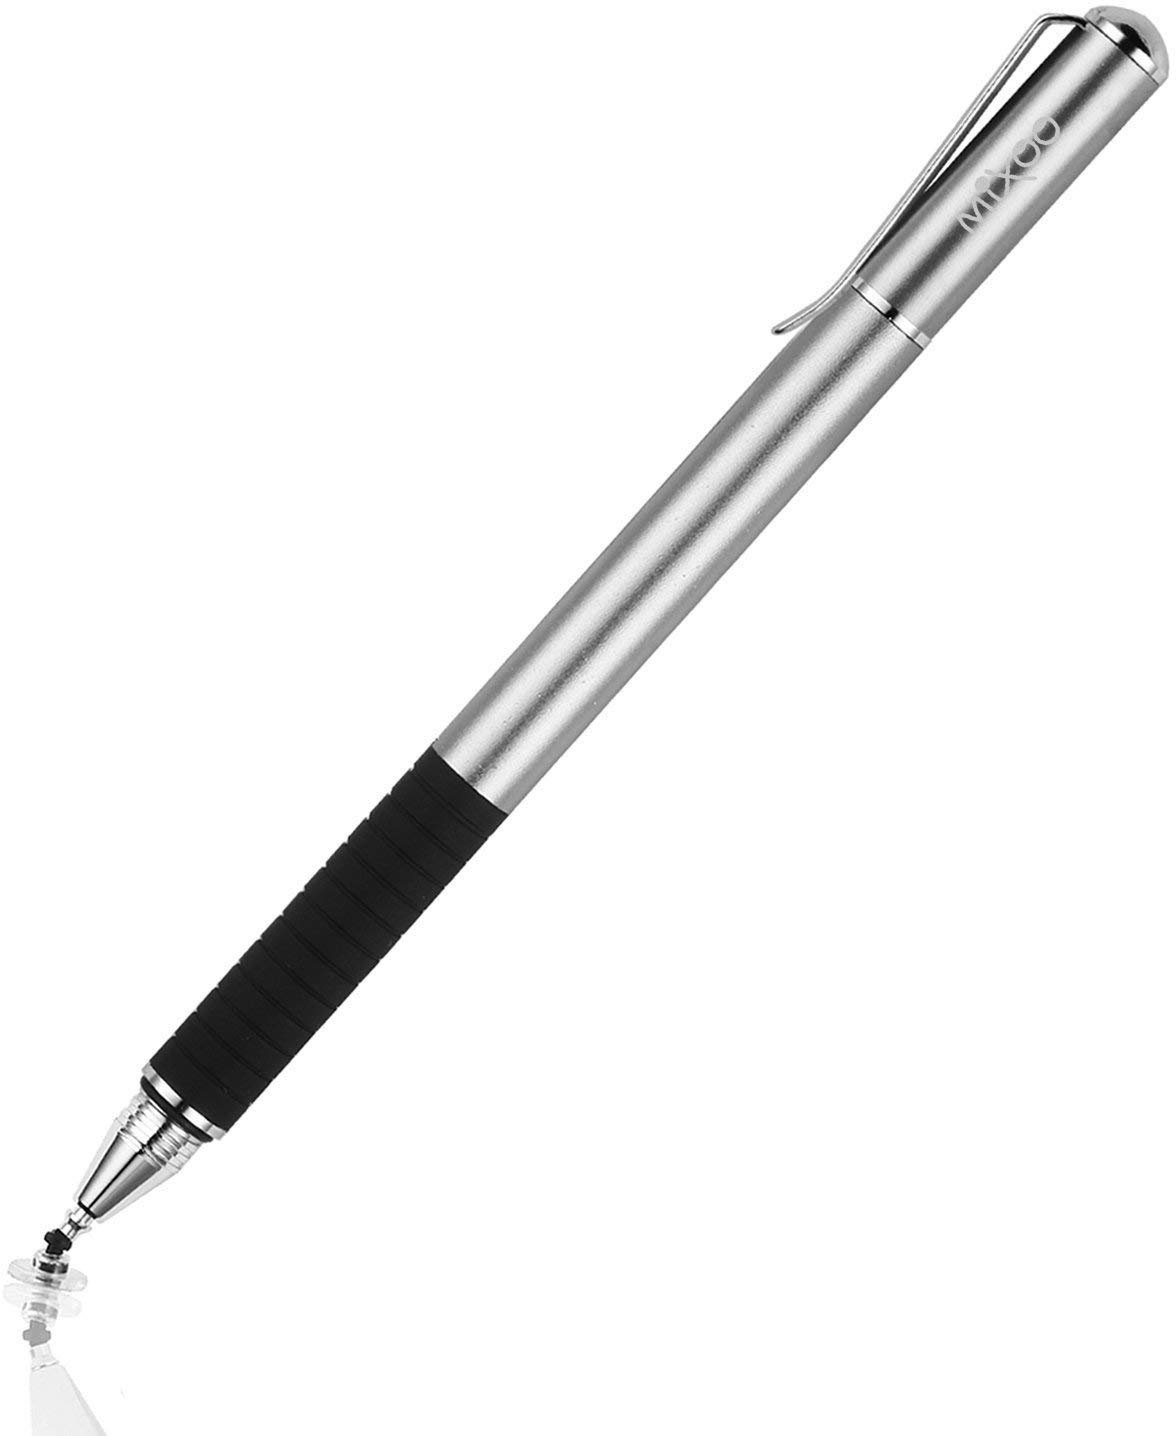 Mixoo Stift Präzision Disc Eingabestift Touchstift Stylus 2 in 1 Kapazitive Touchscreen Stift, kompatibel für Smartphones &Tablets (Grau)